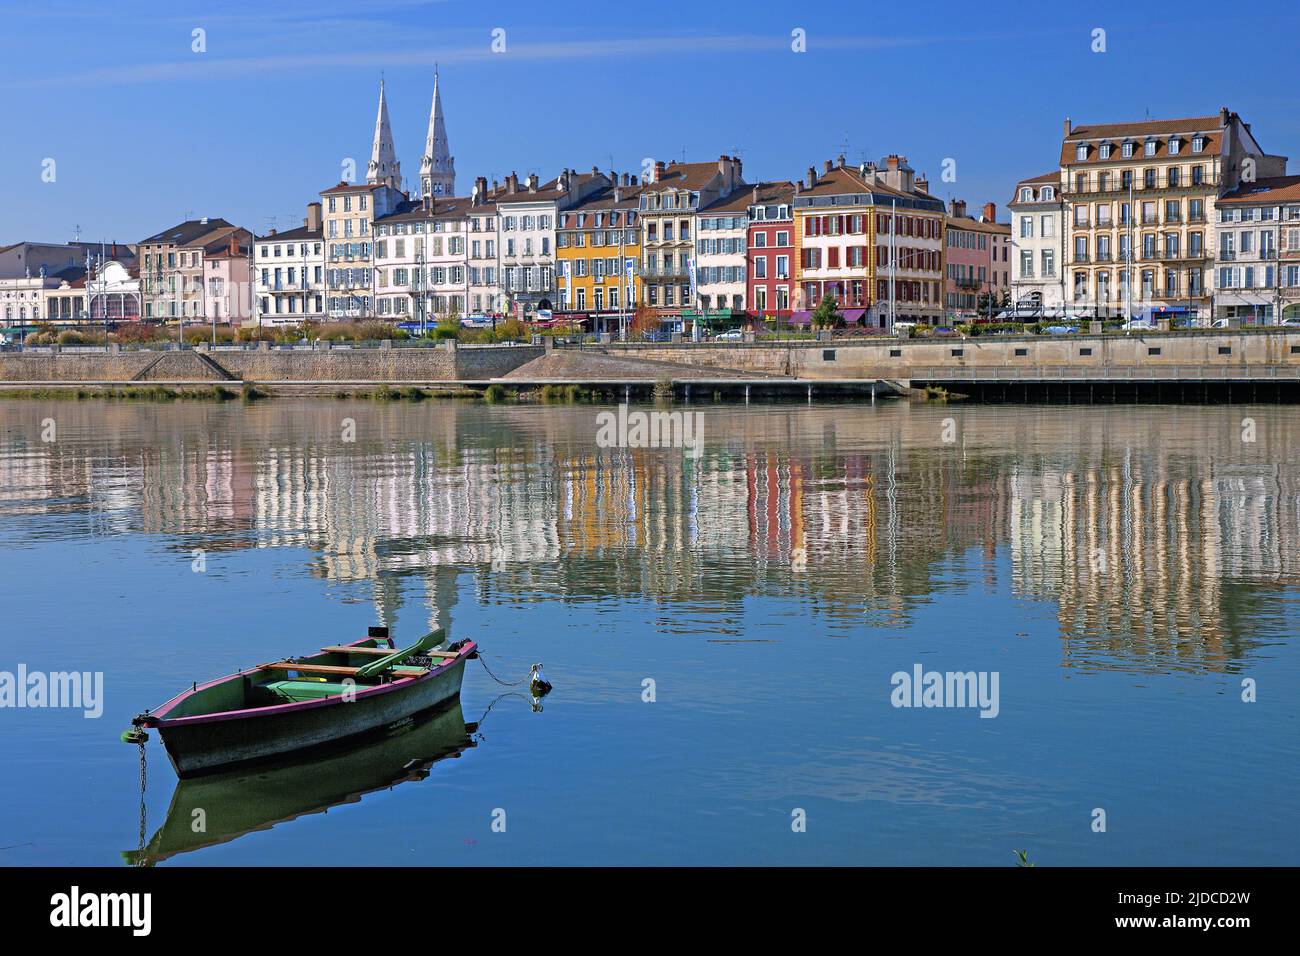 France, Saône-et-Loire Mâcon, la ville des rives de la Saône Banque D'Images